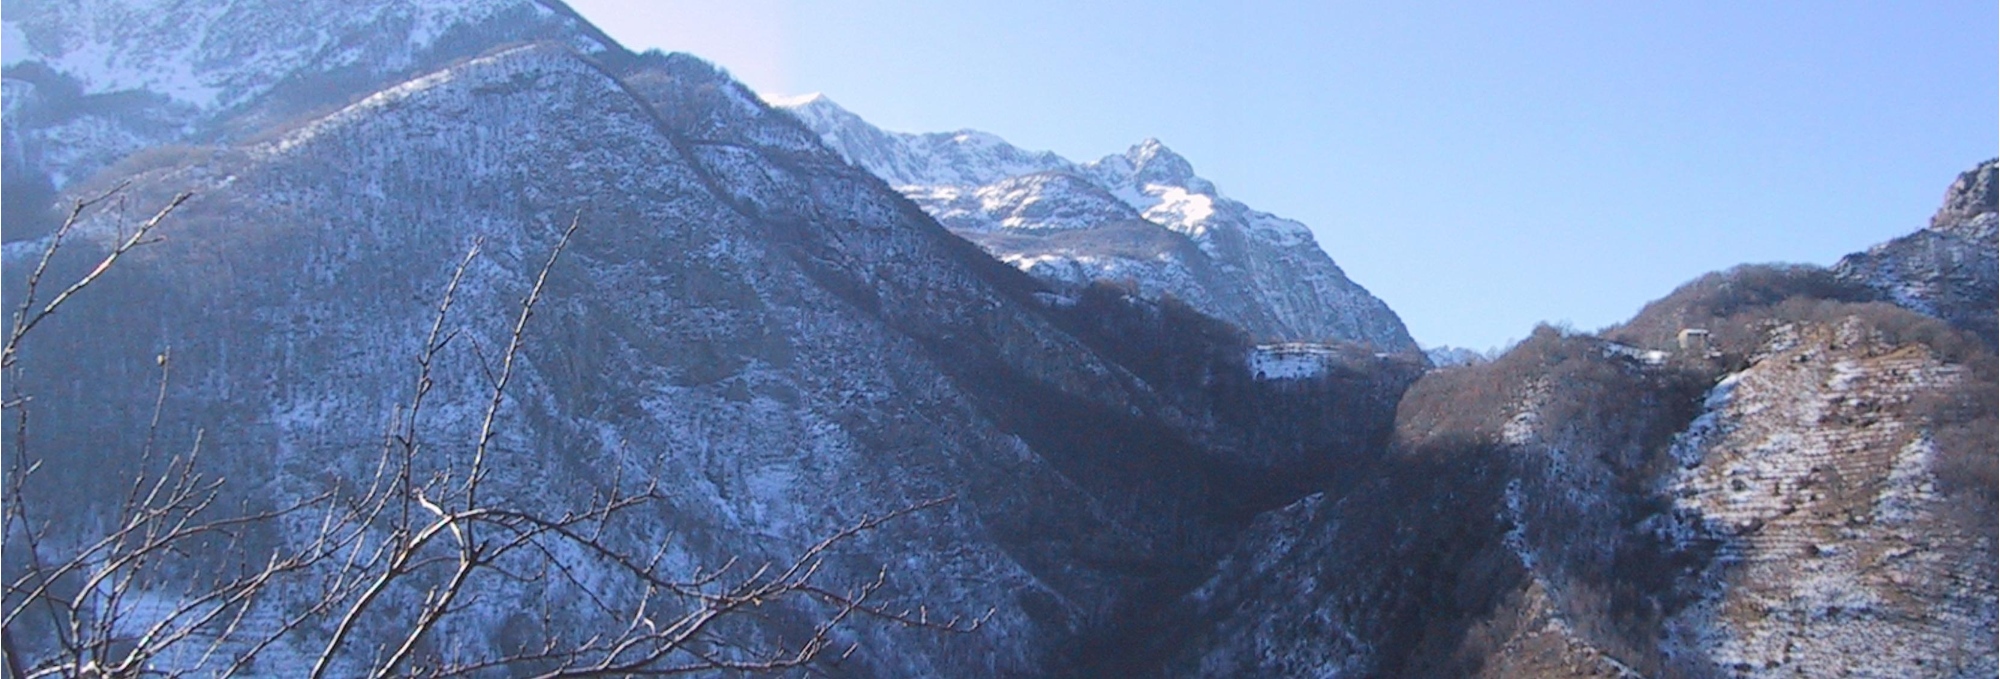 Garfagnana, les Alpes Apuanes